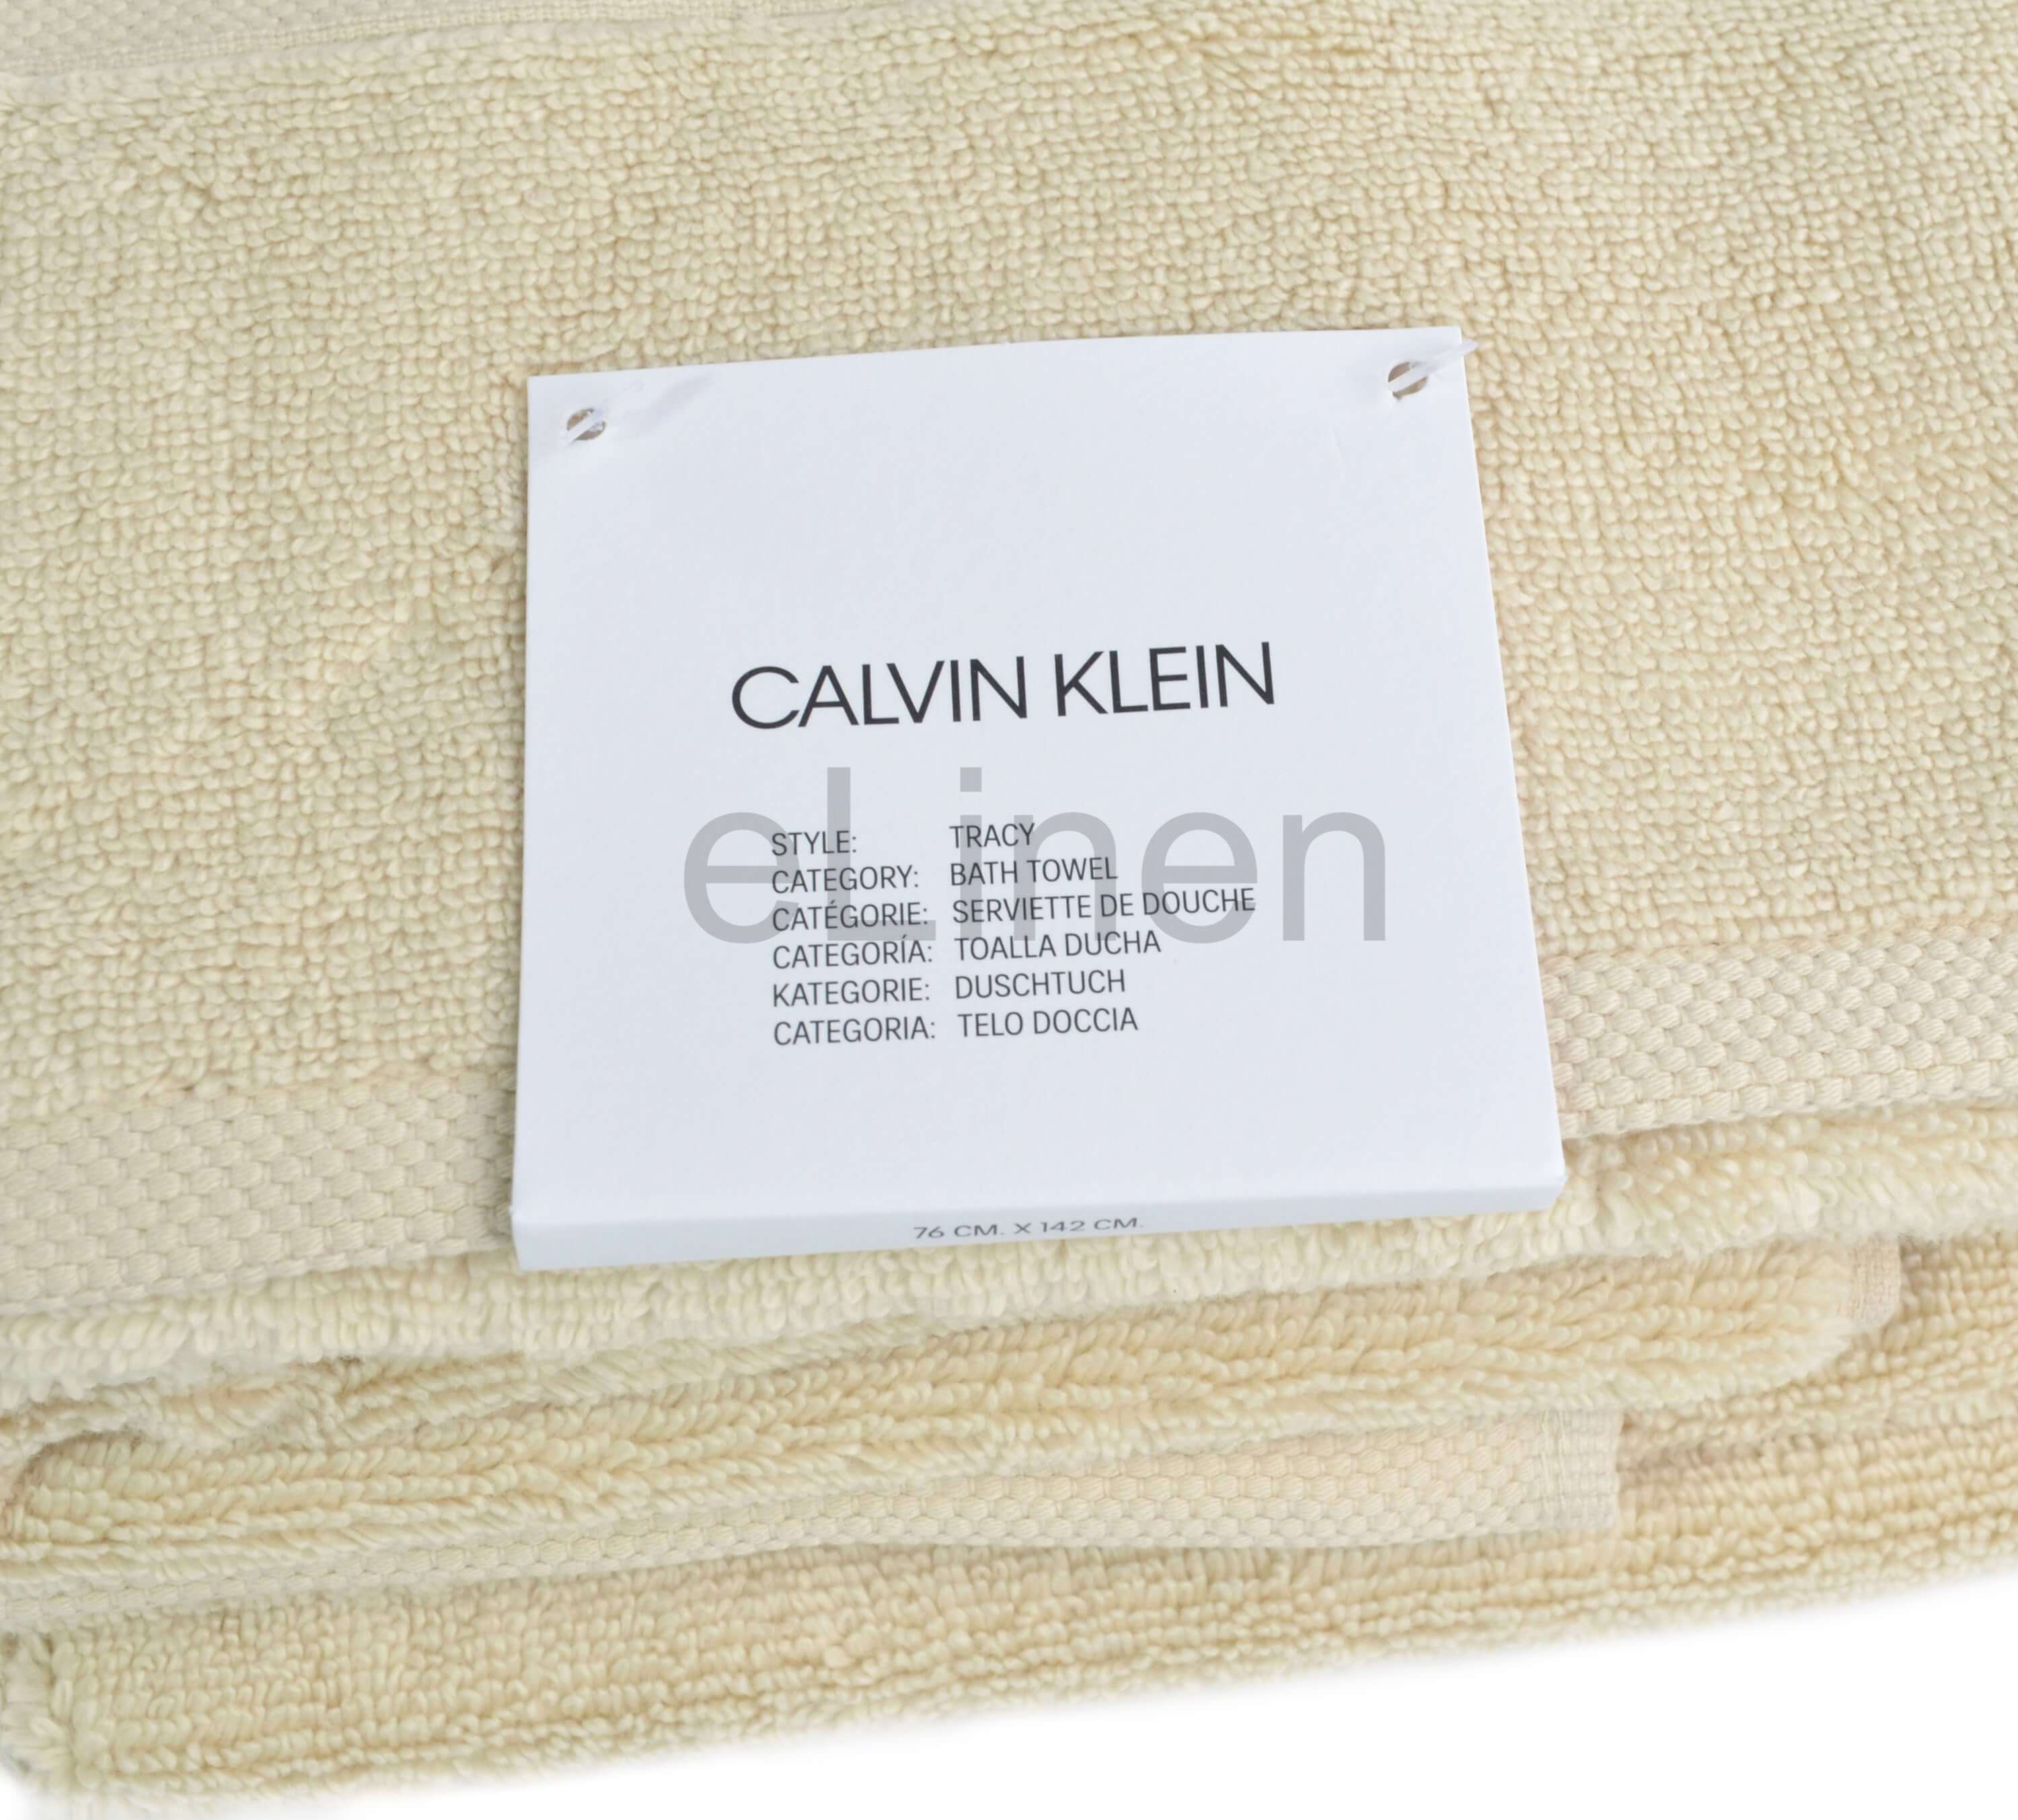 Полотенце Calvin Klein Tracy Beige ☞ Размер: 45 x 81 см